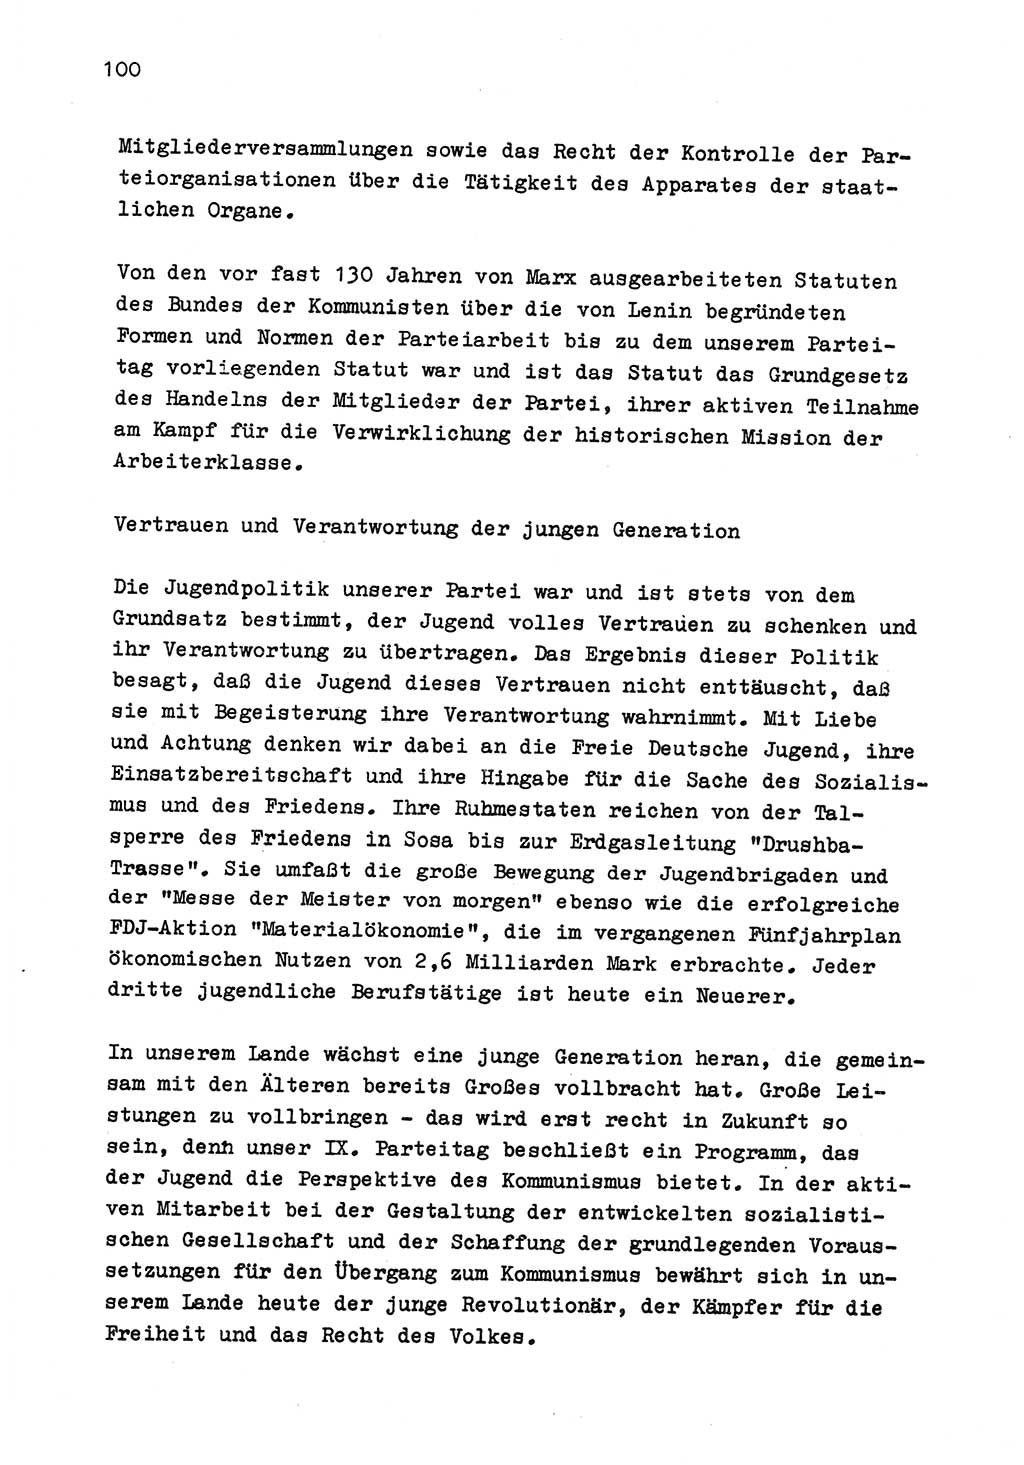 Zu Fragen der Parteiarbeit [Sozialistische Einheitspartei Deutschlands (SED) Deutsche Demokratische Republik (DDR)] 1979, Seite 100 (Fr. PA SED DDR 1979, S. 100)